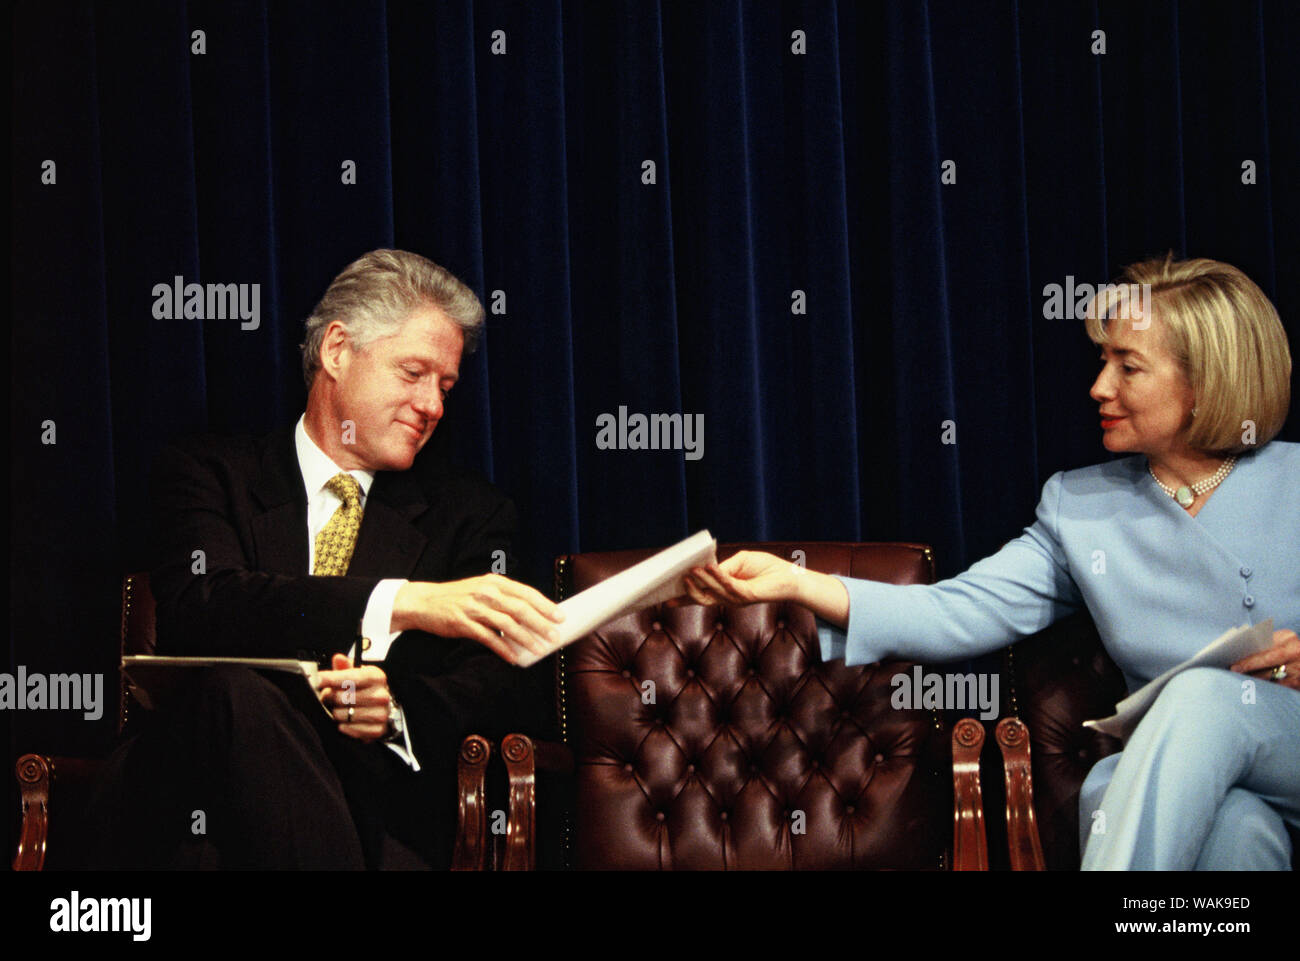 13 août, 1997. Washington, D.C. Président William Jefferson Clinton et la première dame Hillary Rodham Clinton transmettre une note au cours d'un événement de santé. Banque D'Images